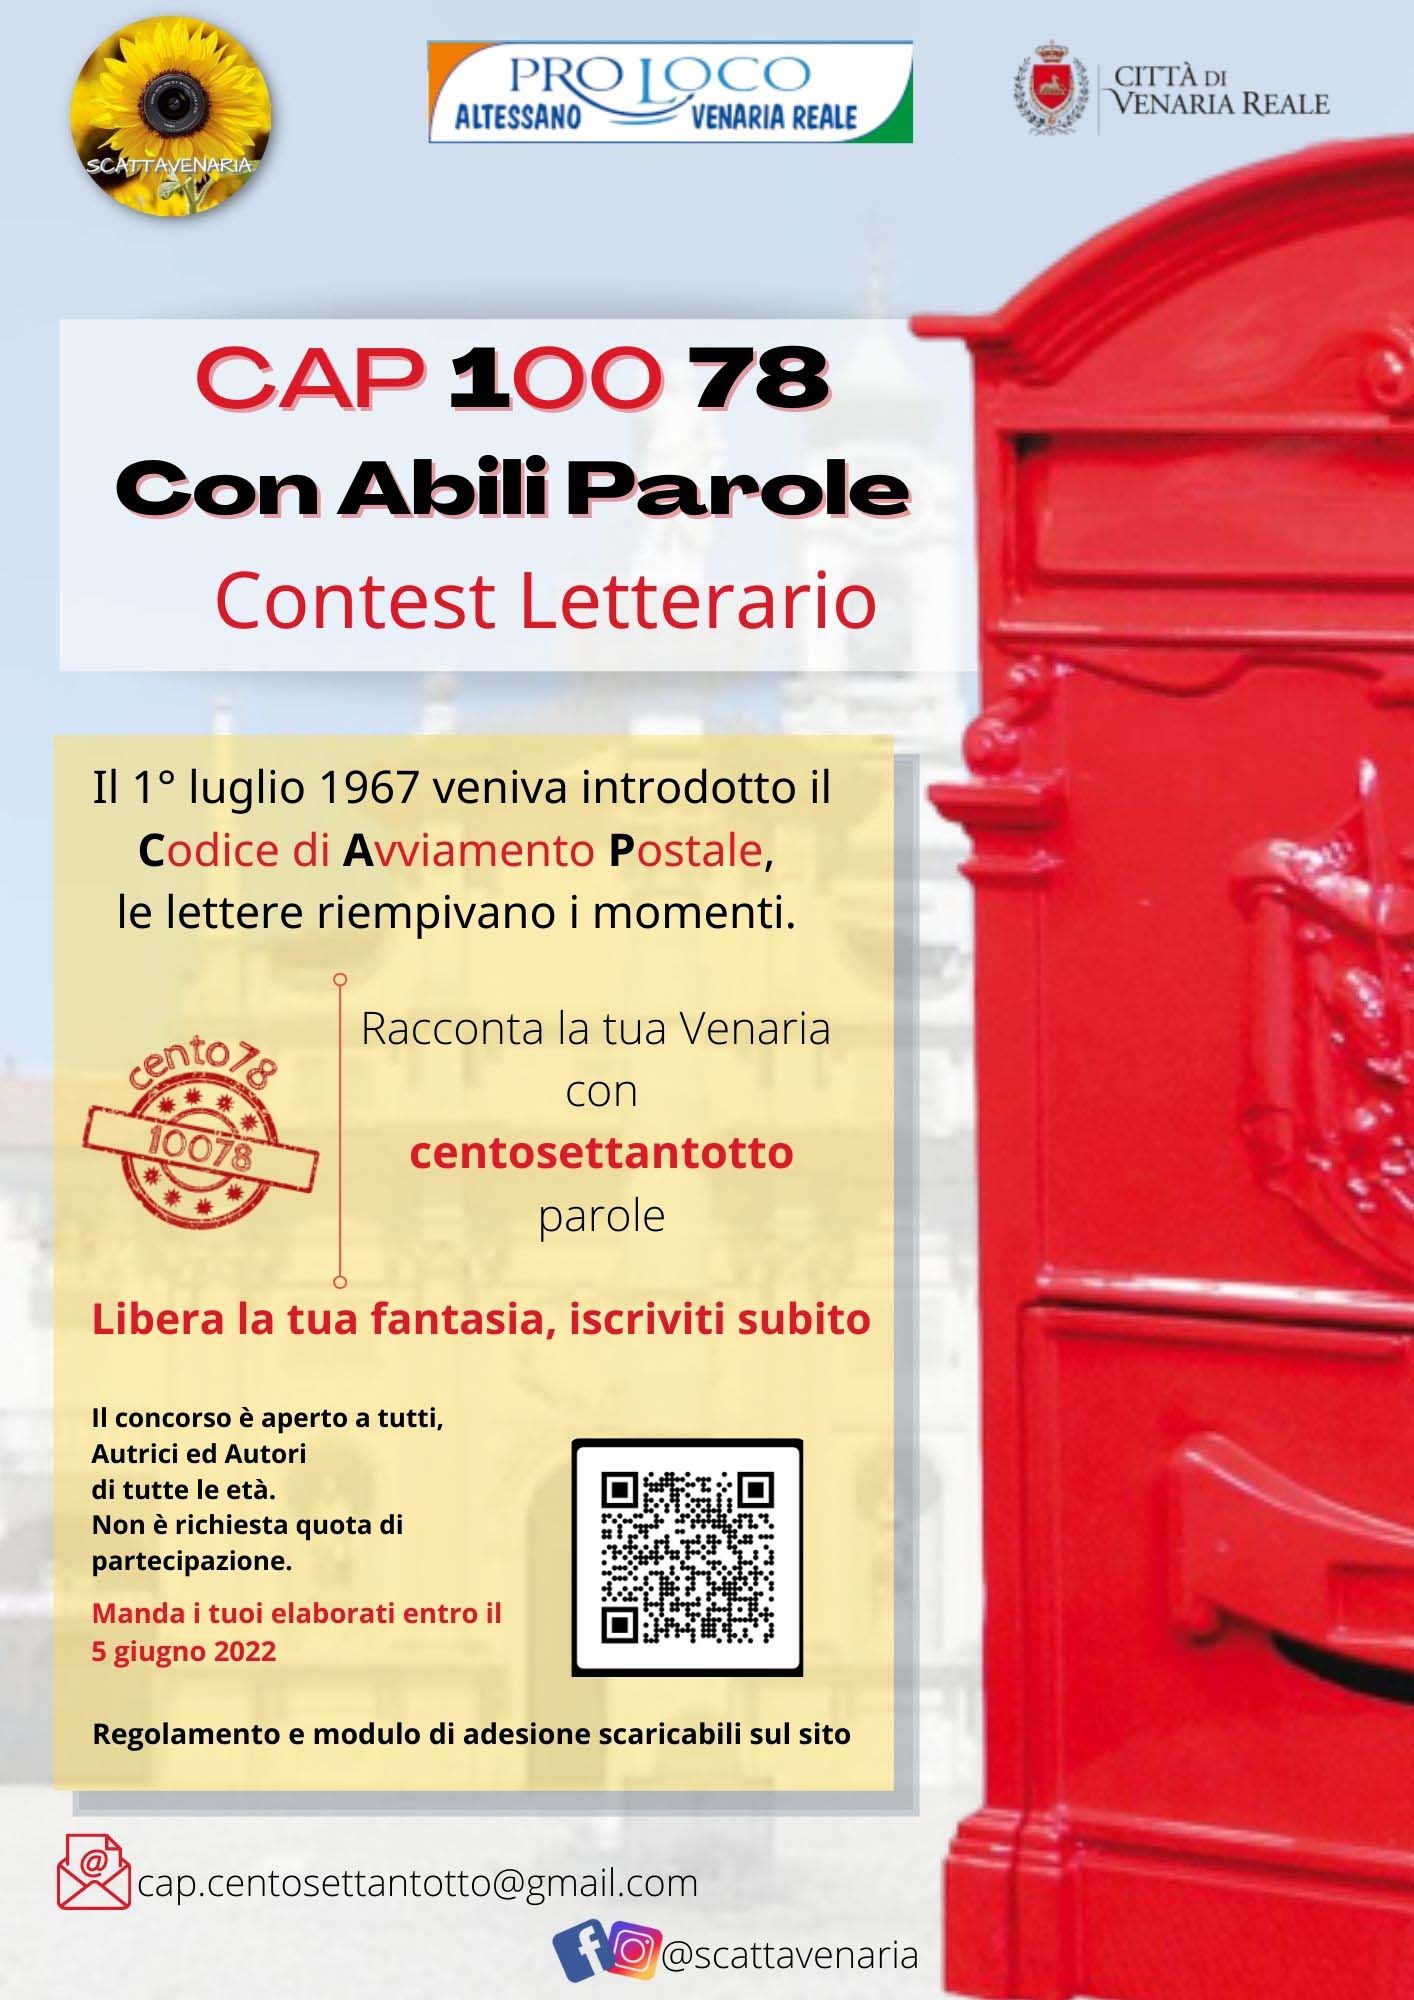 Contest letterario - CAP 10078 Con Abili Parole 📣